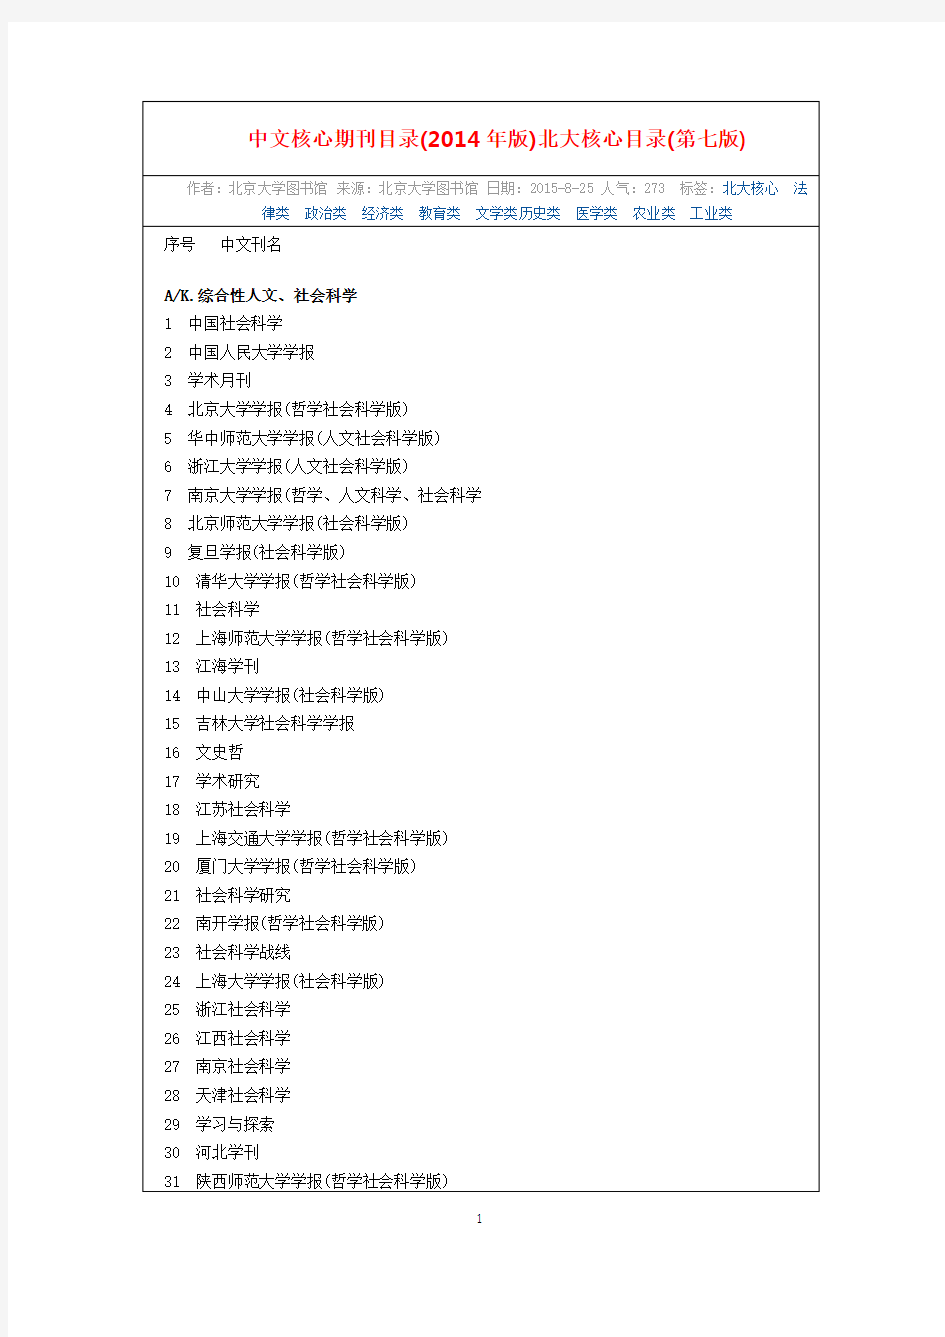 2015第七版中文核心期刊要目总览(北核)